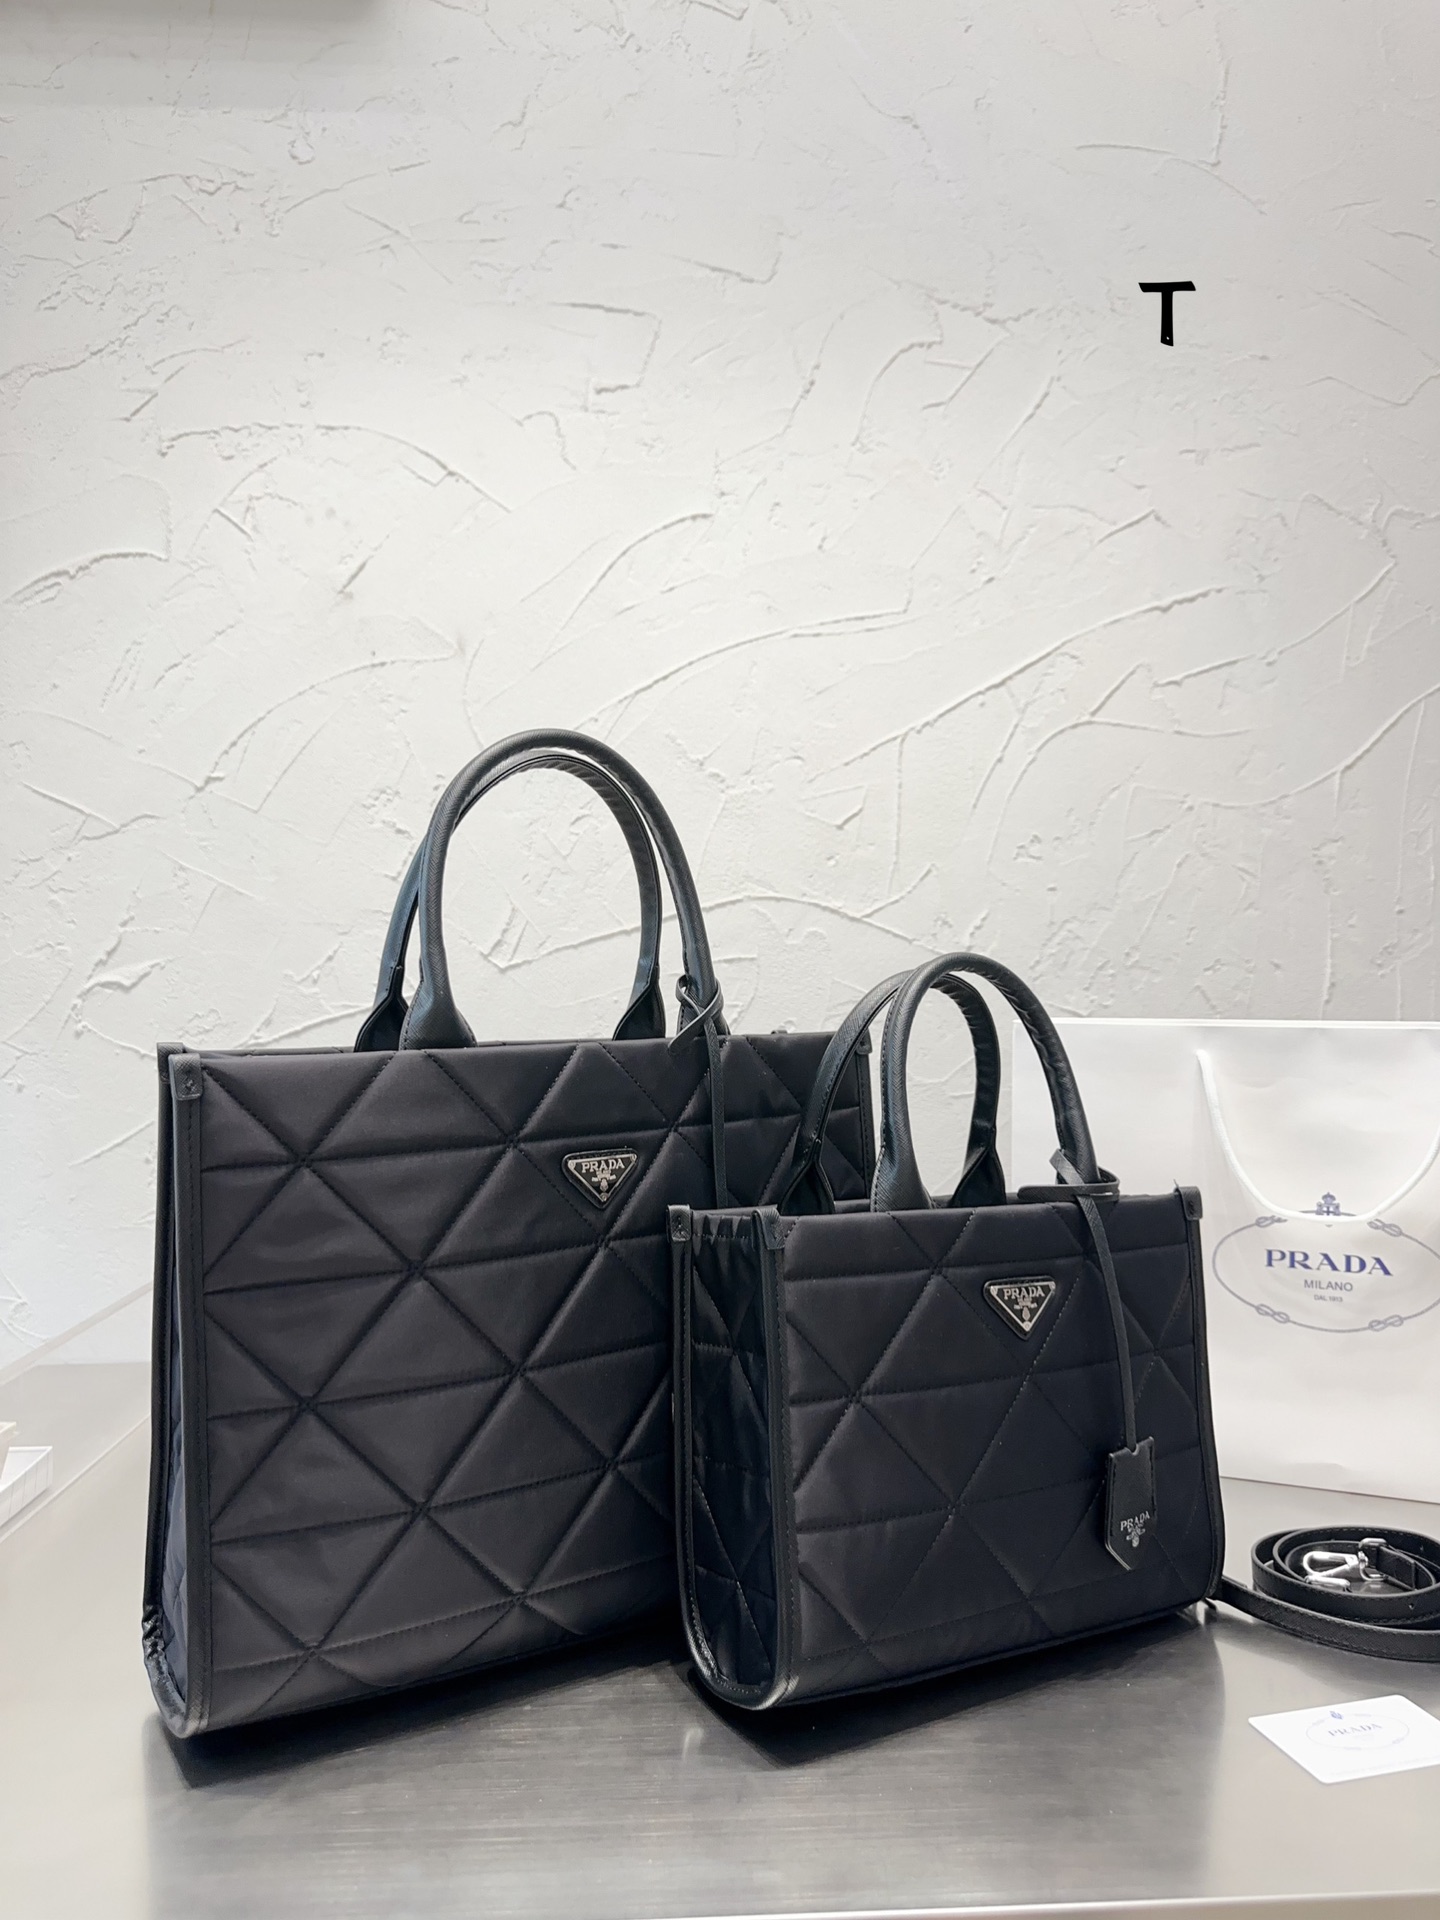 Prada Handbags Tote Bags Fashion